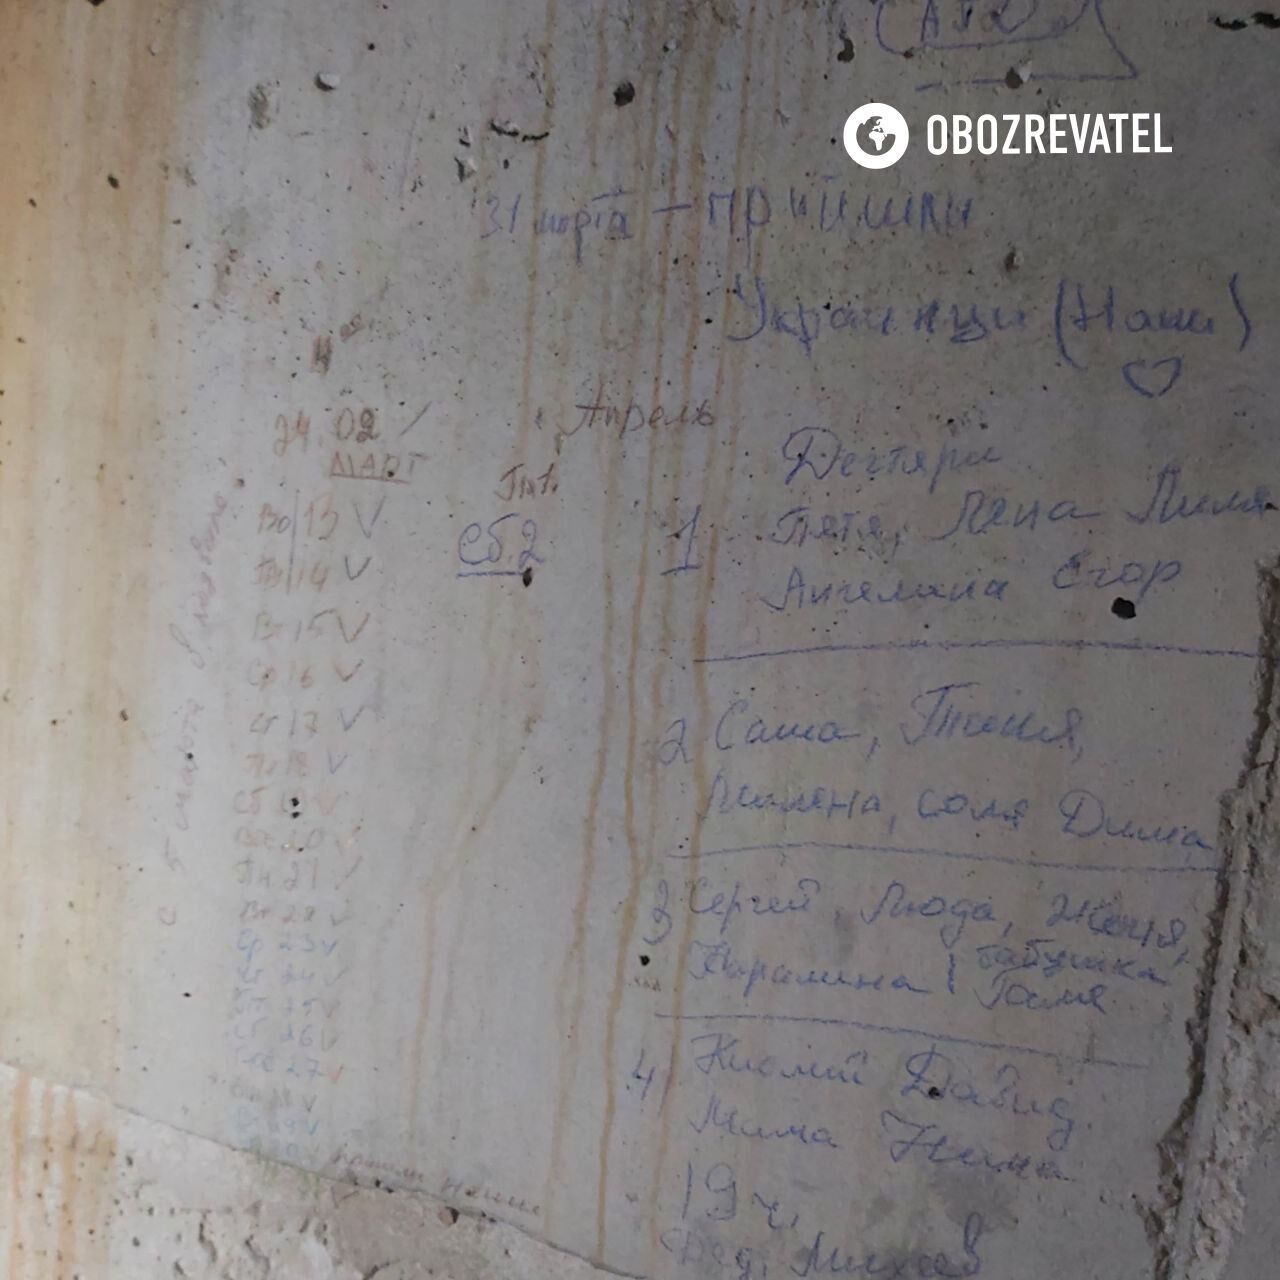 Список людей, которых оккупанты удерживали в подвале.